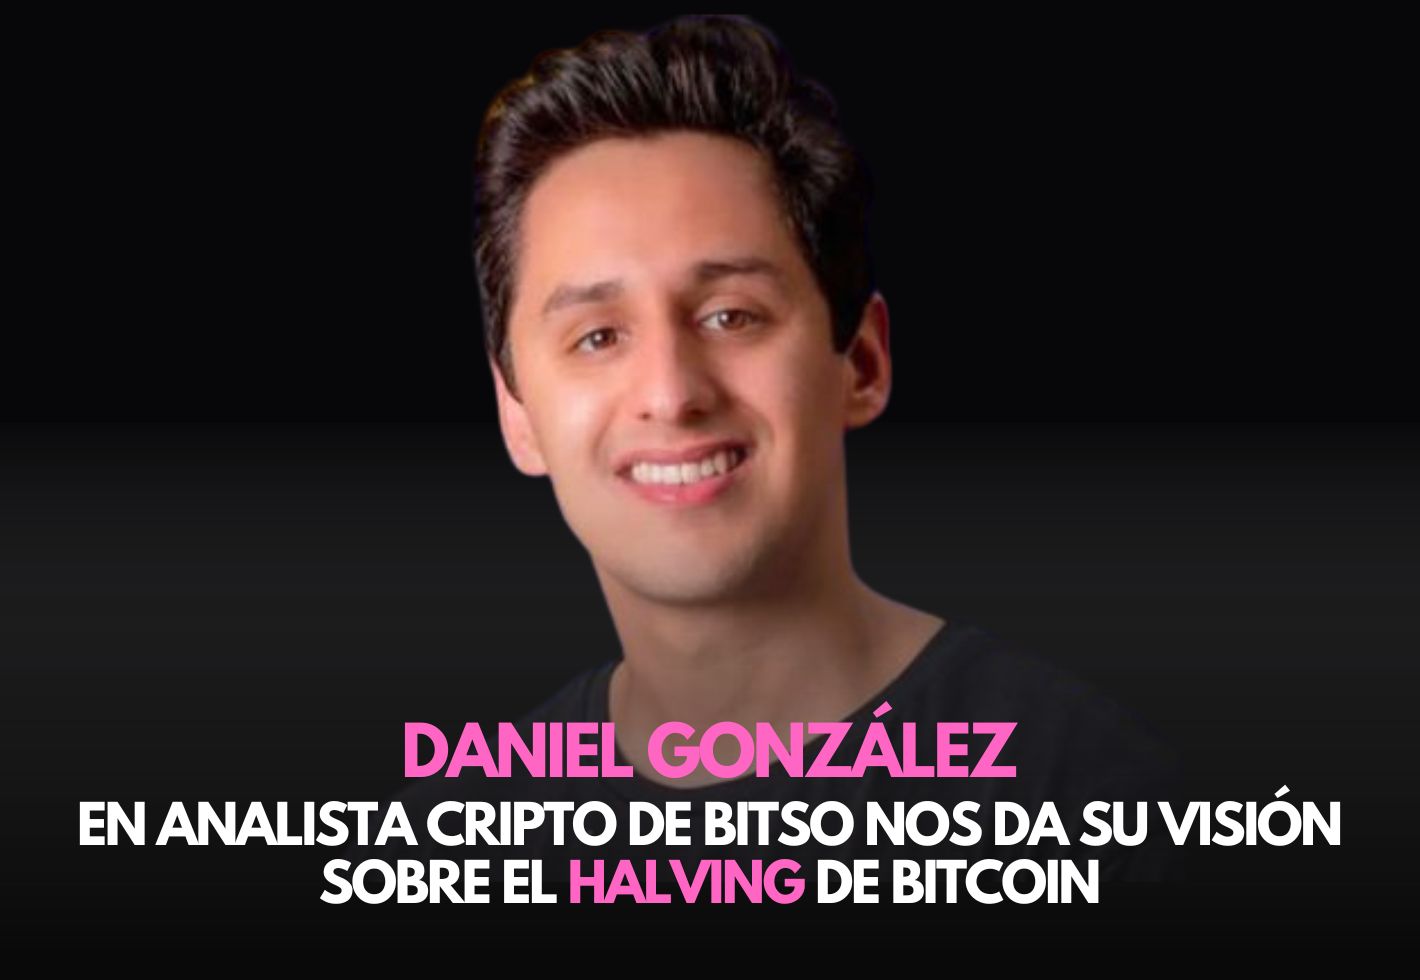 Daniel González analista cripto en Bitso nos habla del halving